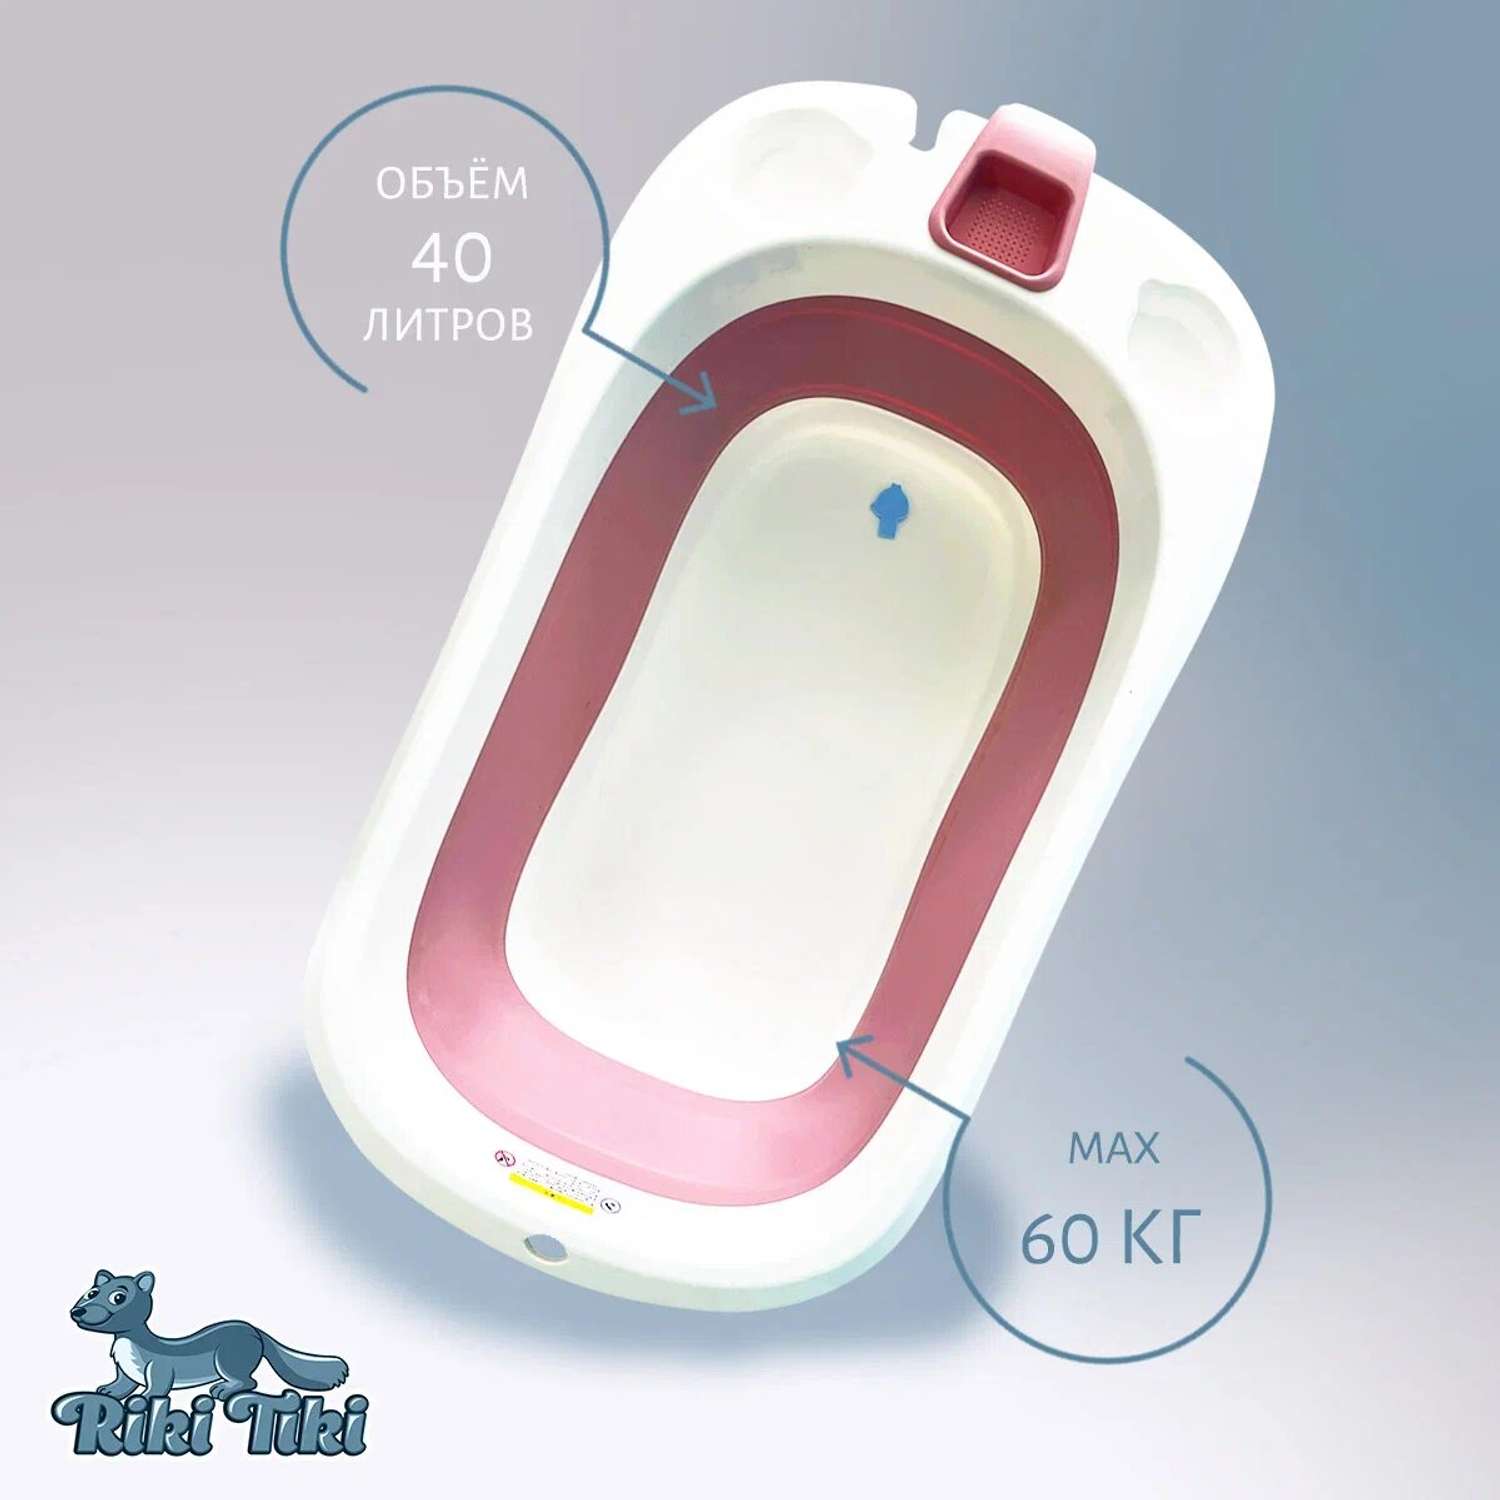 Ванночка детская RIKI TIKI 1116 Vendy брусничная складная с термочувствительной пробкой - фото 7